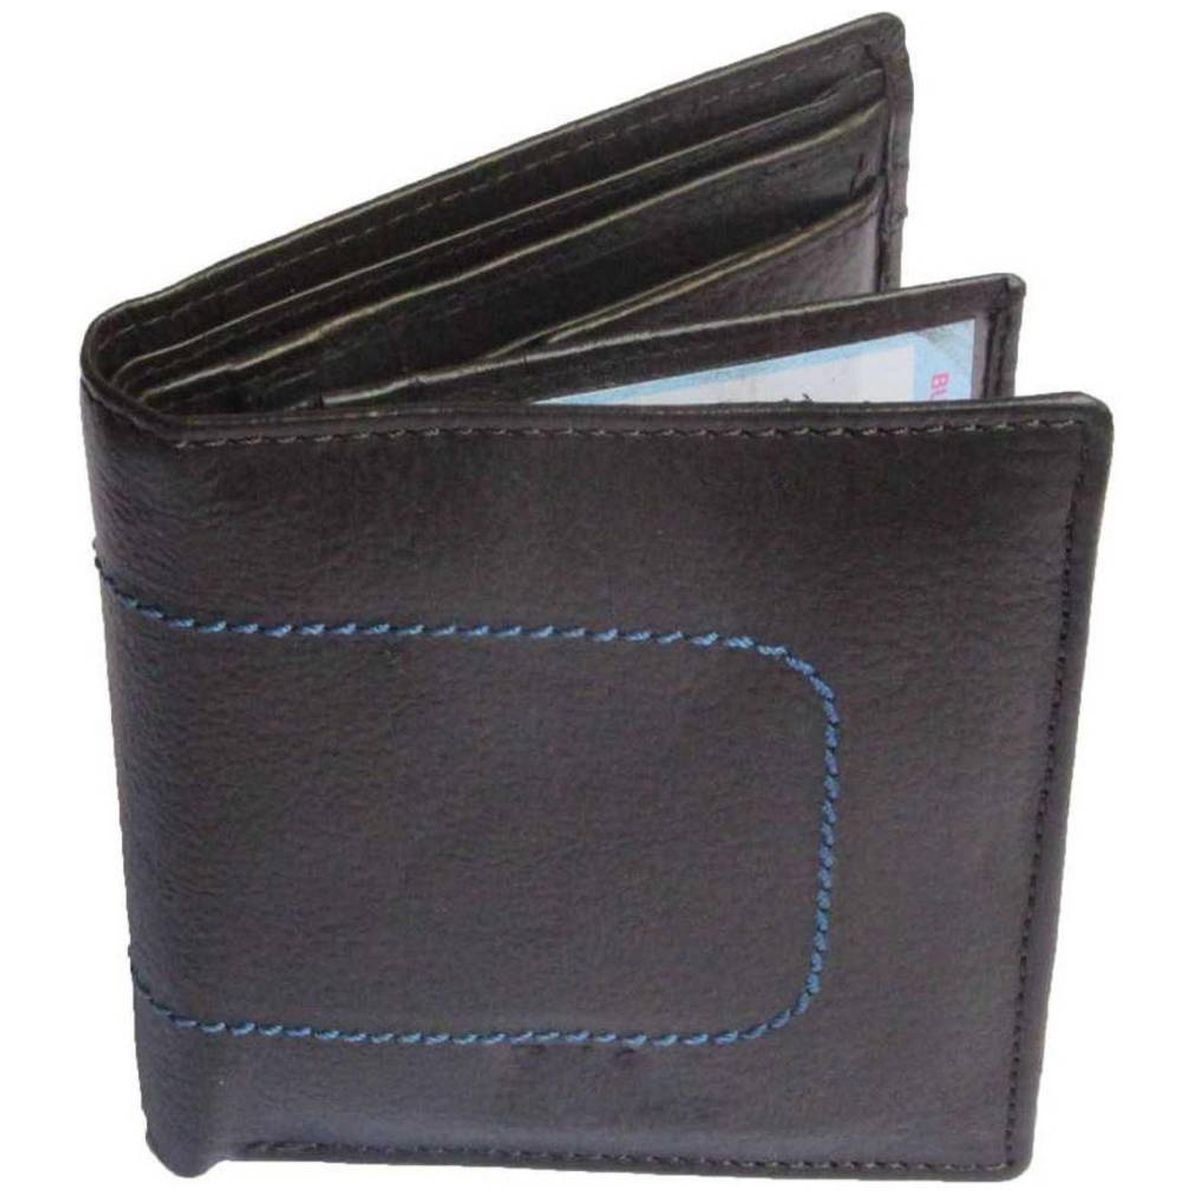 Debonair International Men Genuine Leather 8 Slots Wallet, DI934523, Black